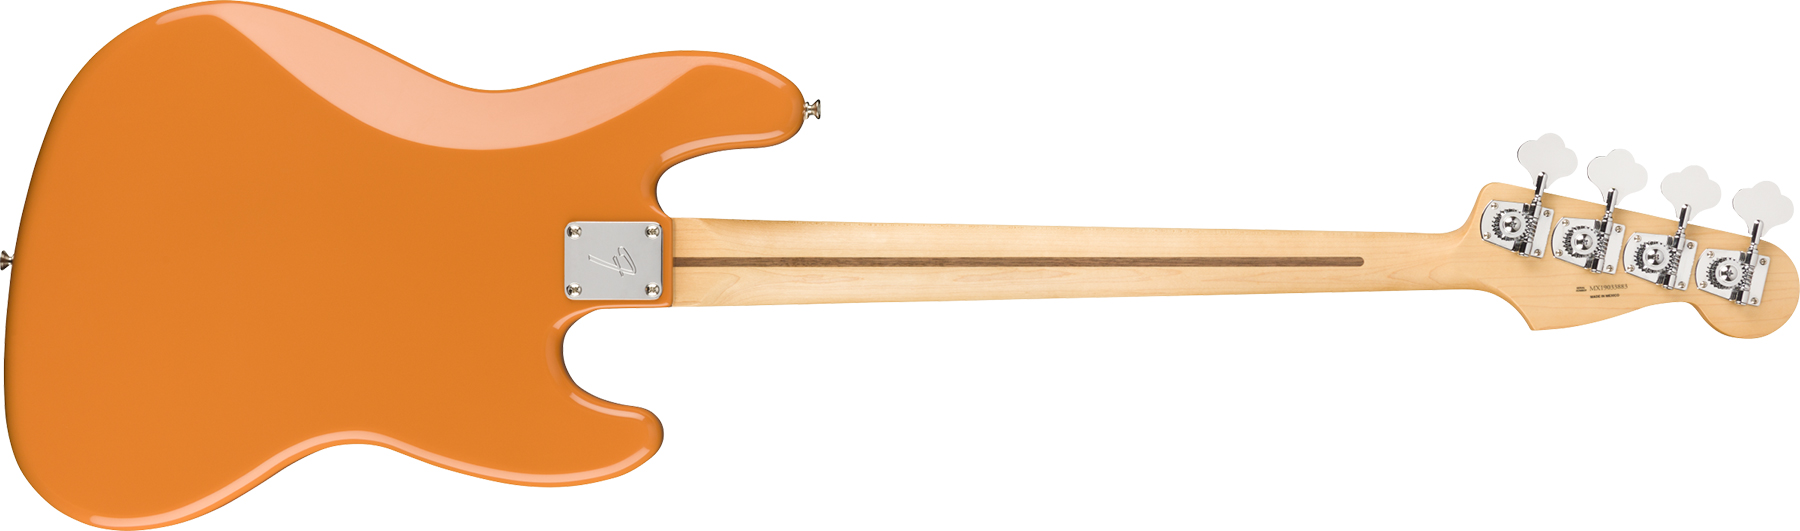 Fender Jazz Bass Player Lh Gaucher Mex Pf - Capri Orange - Solid body elektrische bas - Variation 1